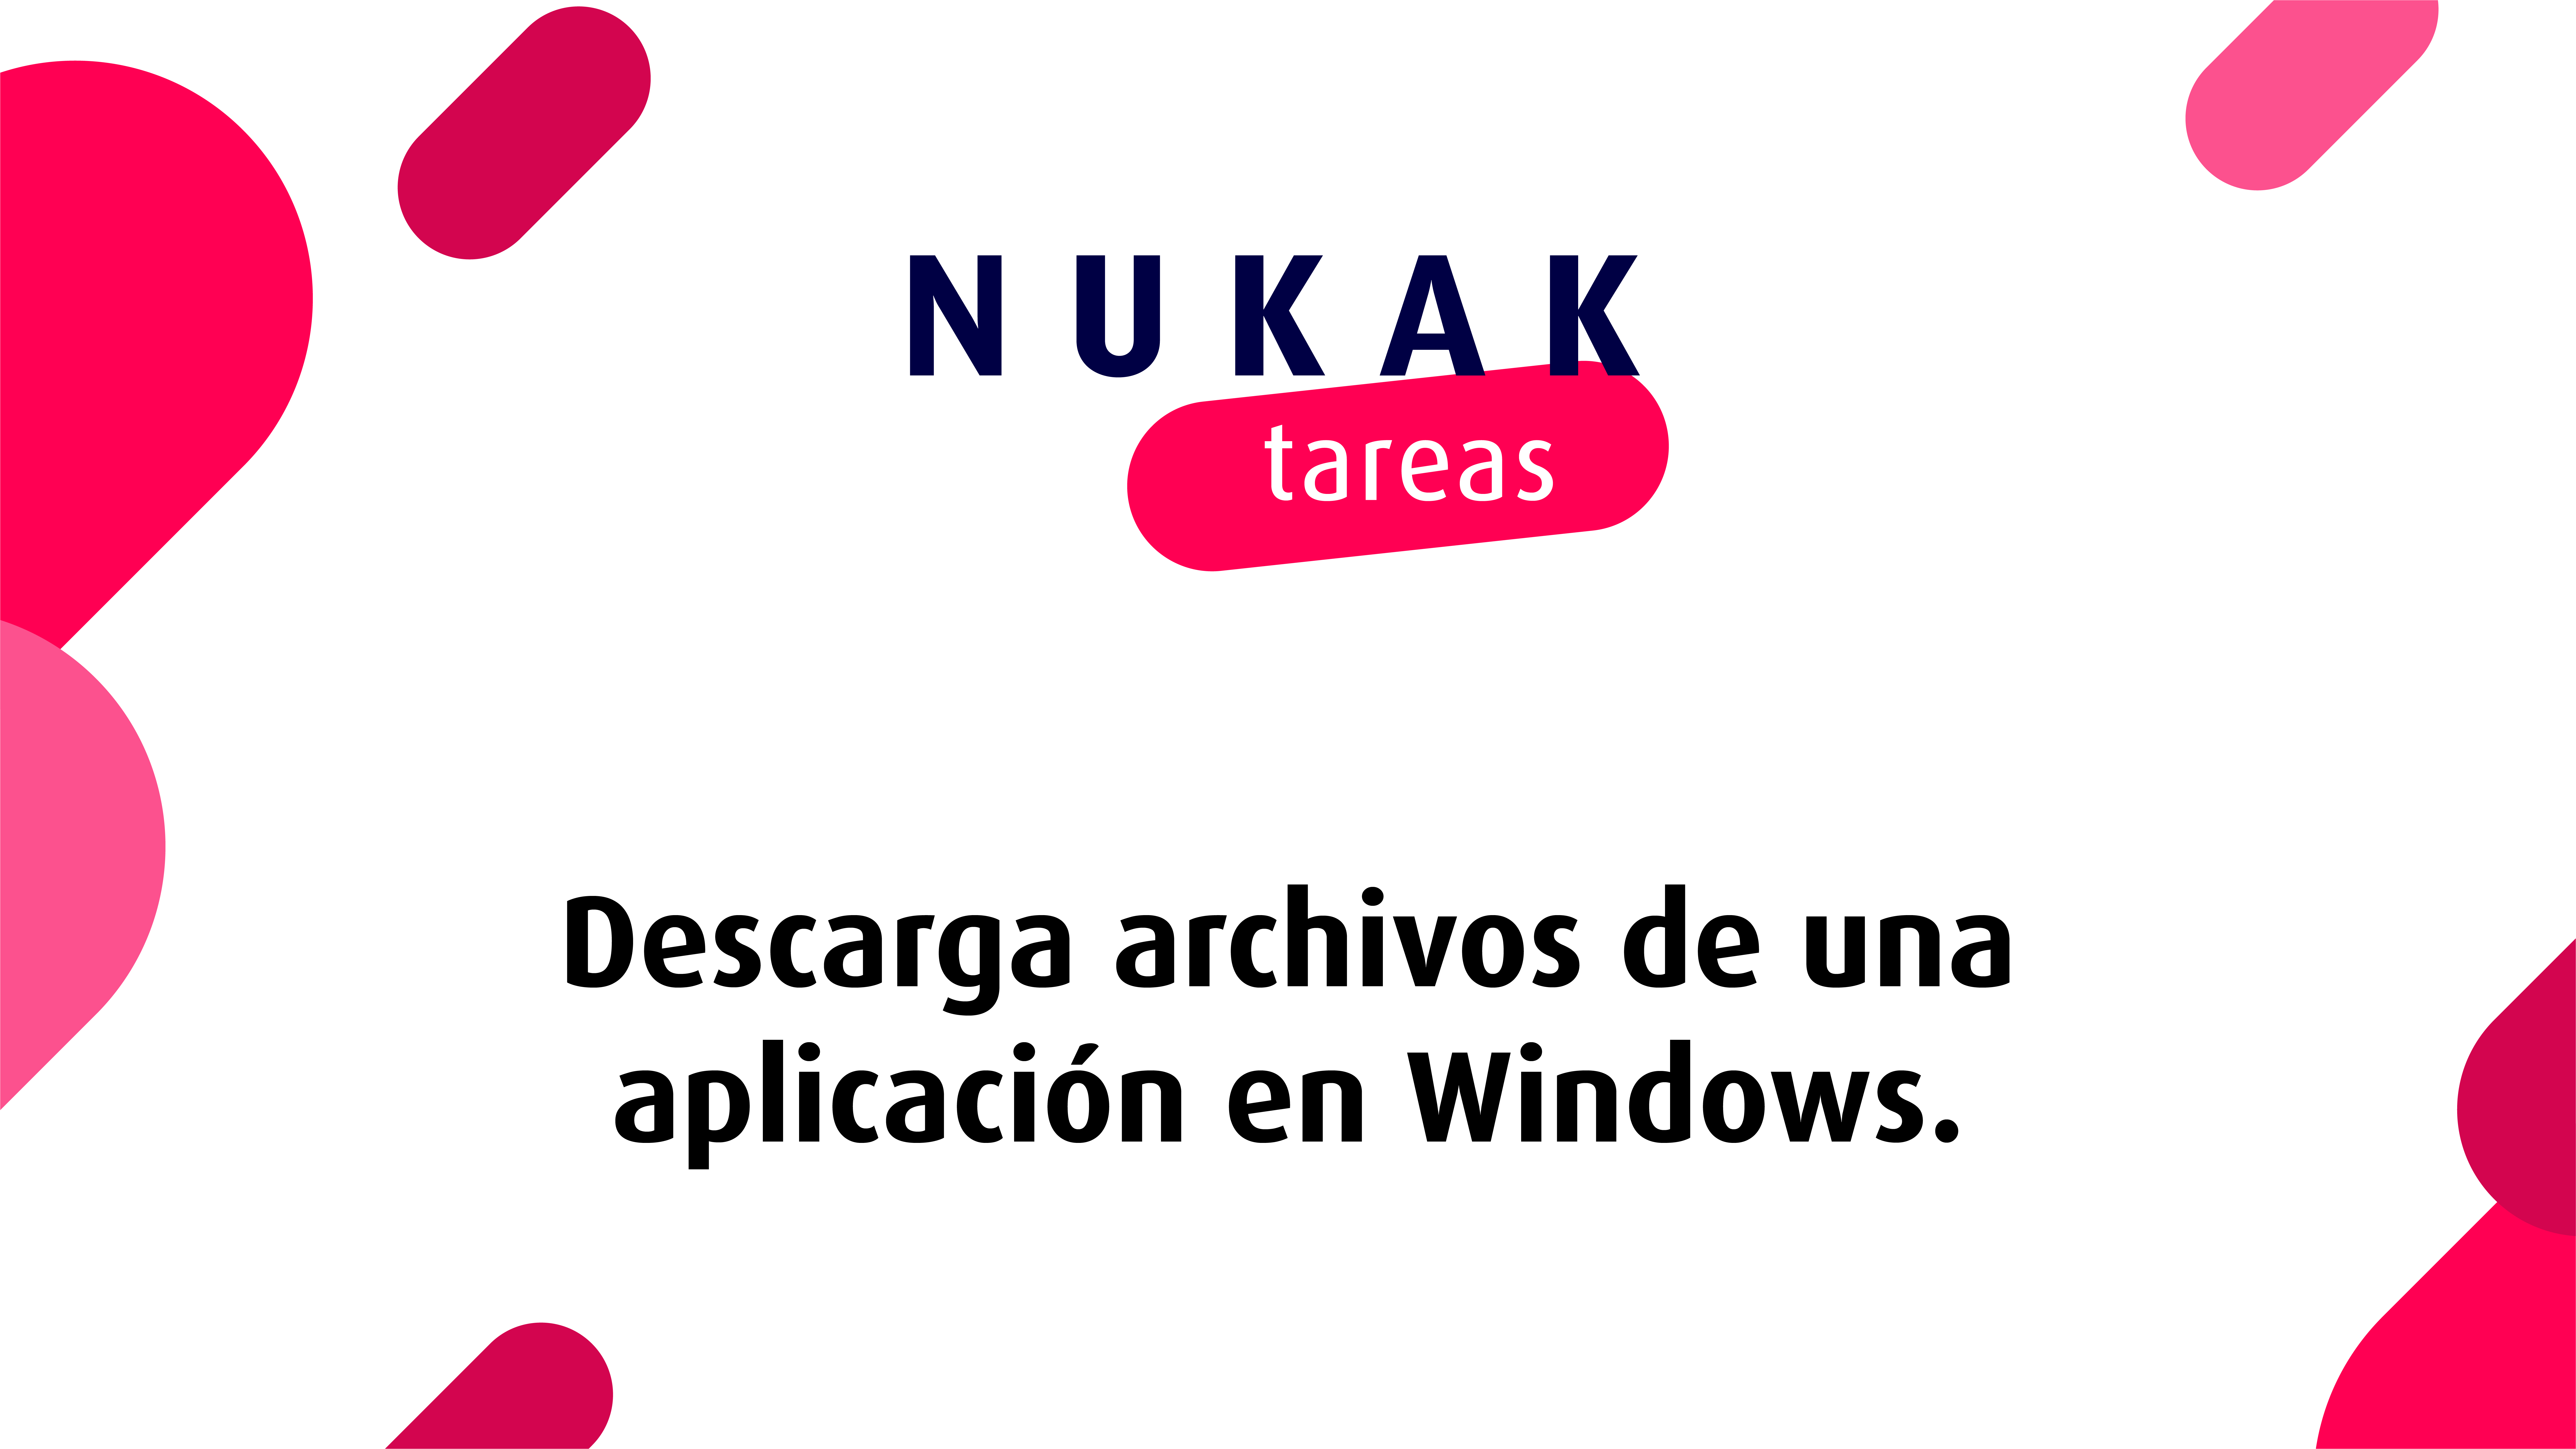 Descarga archivos desde Windows